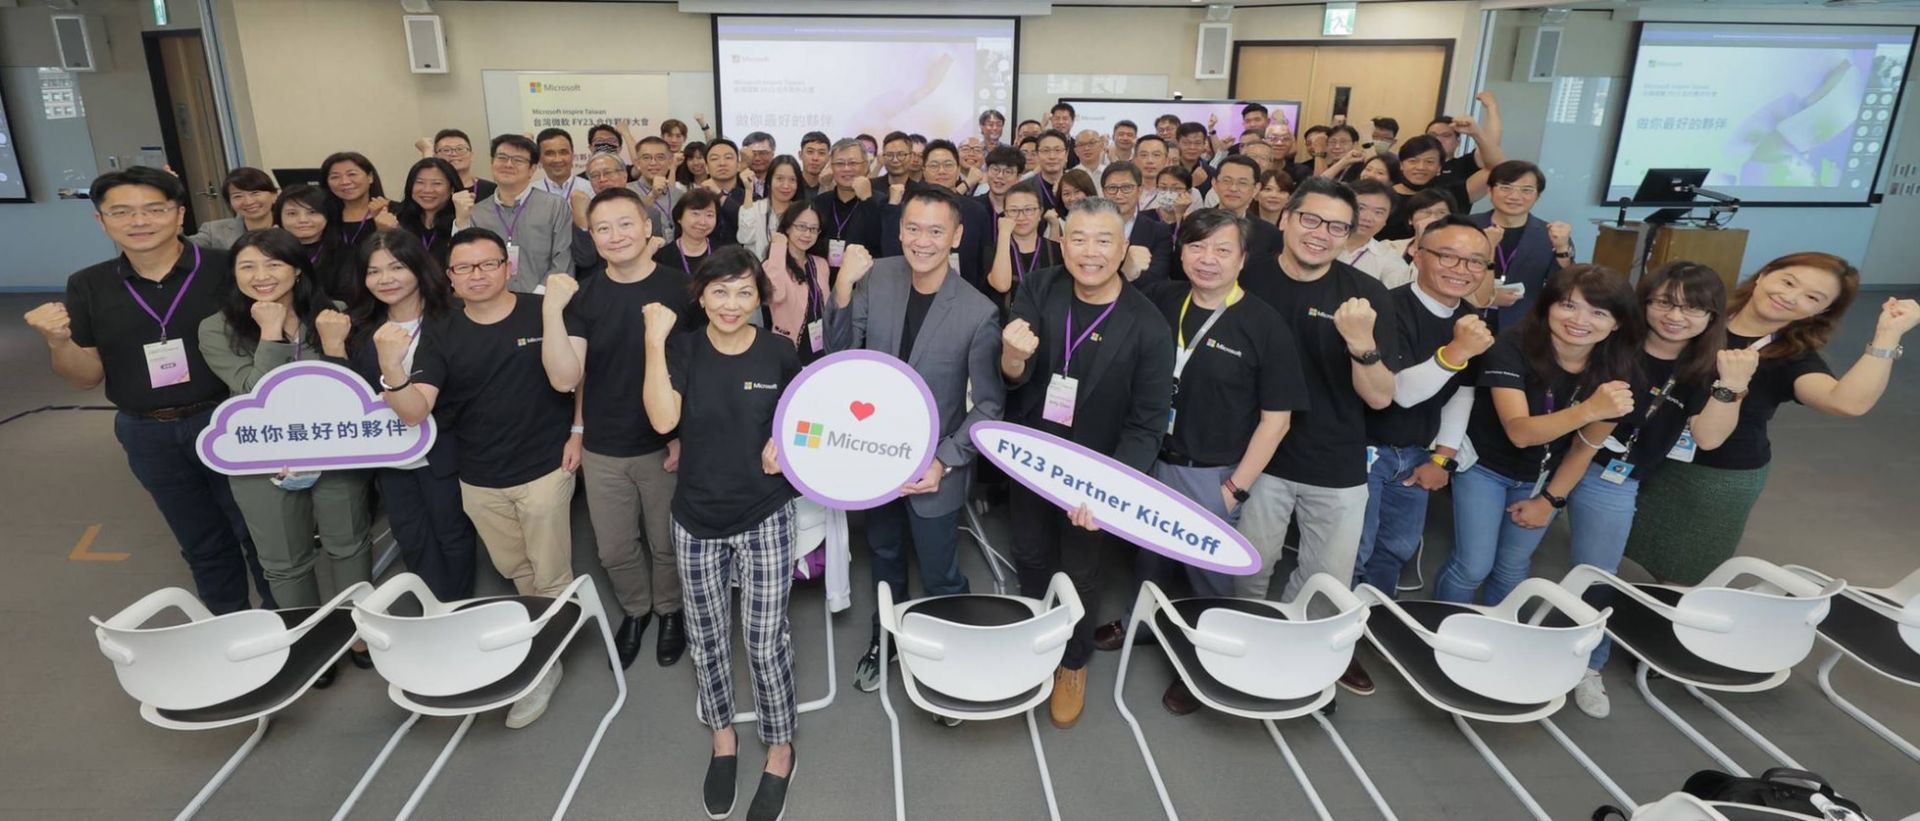 台灣微軟Y23年度合作夥伴大會